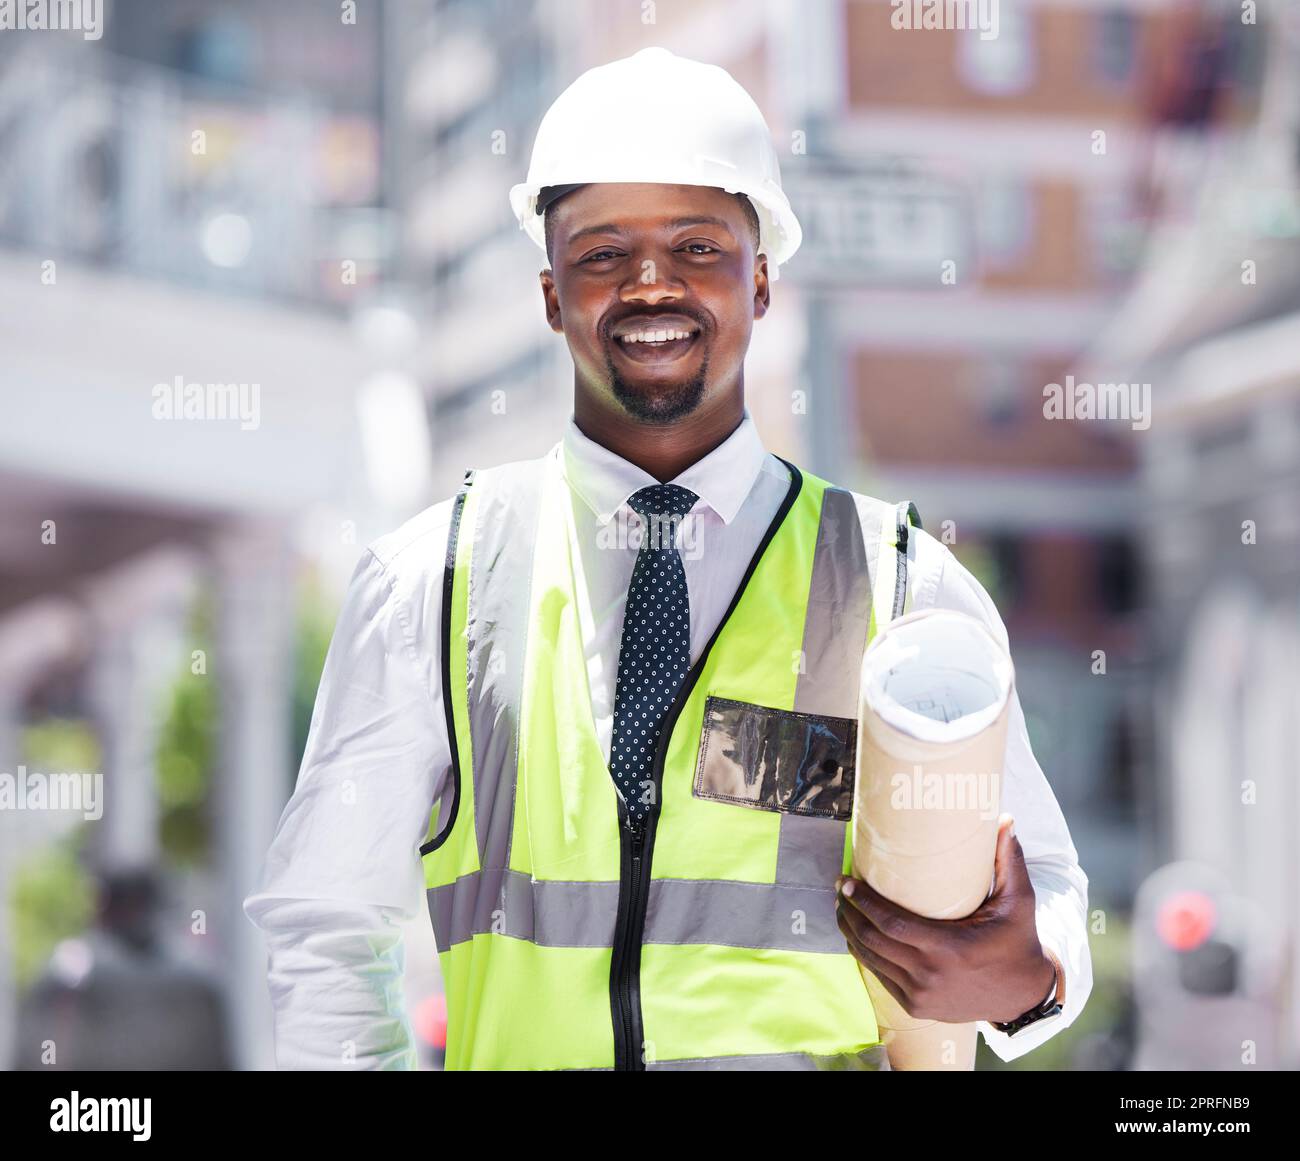 Imprenditore, costruttore e appaltatore che possiede piani di costruzione con una visione per il successo nel settore edile. Ritratto di un uomo nero sorridente con un piano e un'idea per il design architettonico della città. Foto Stock